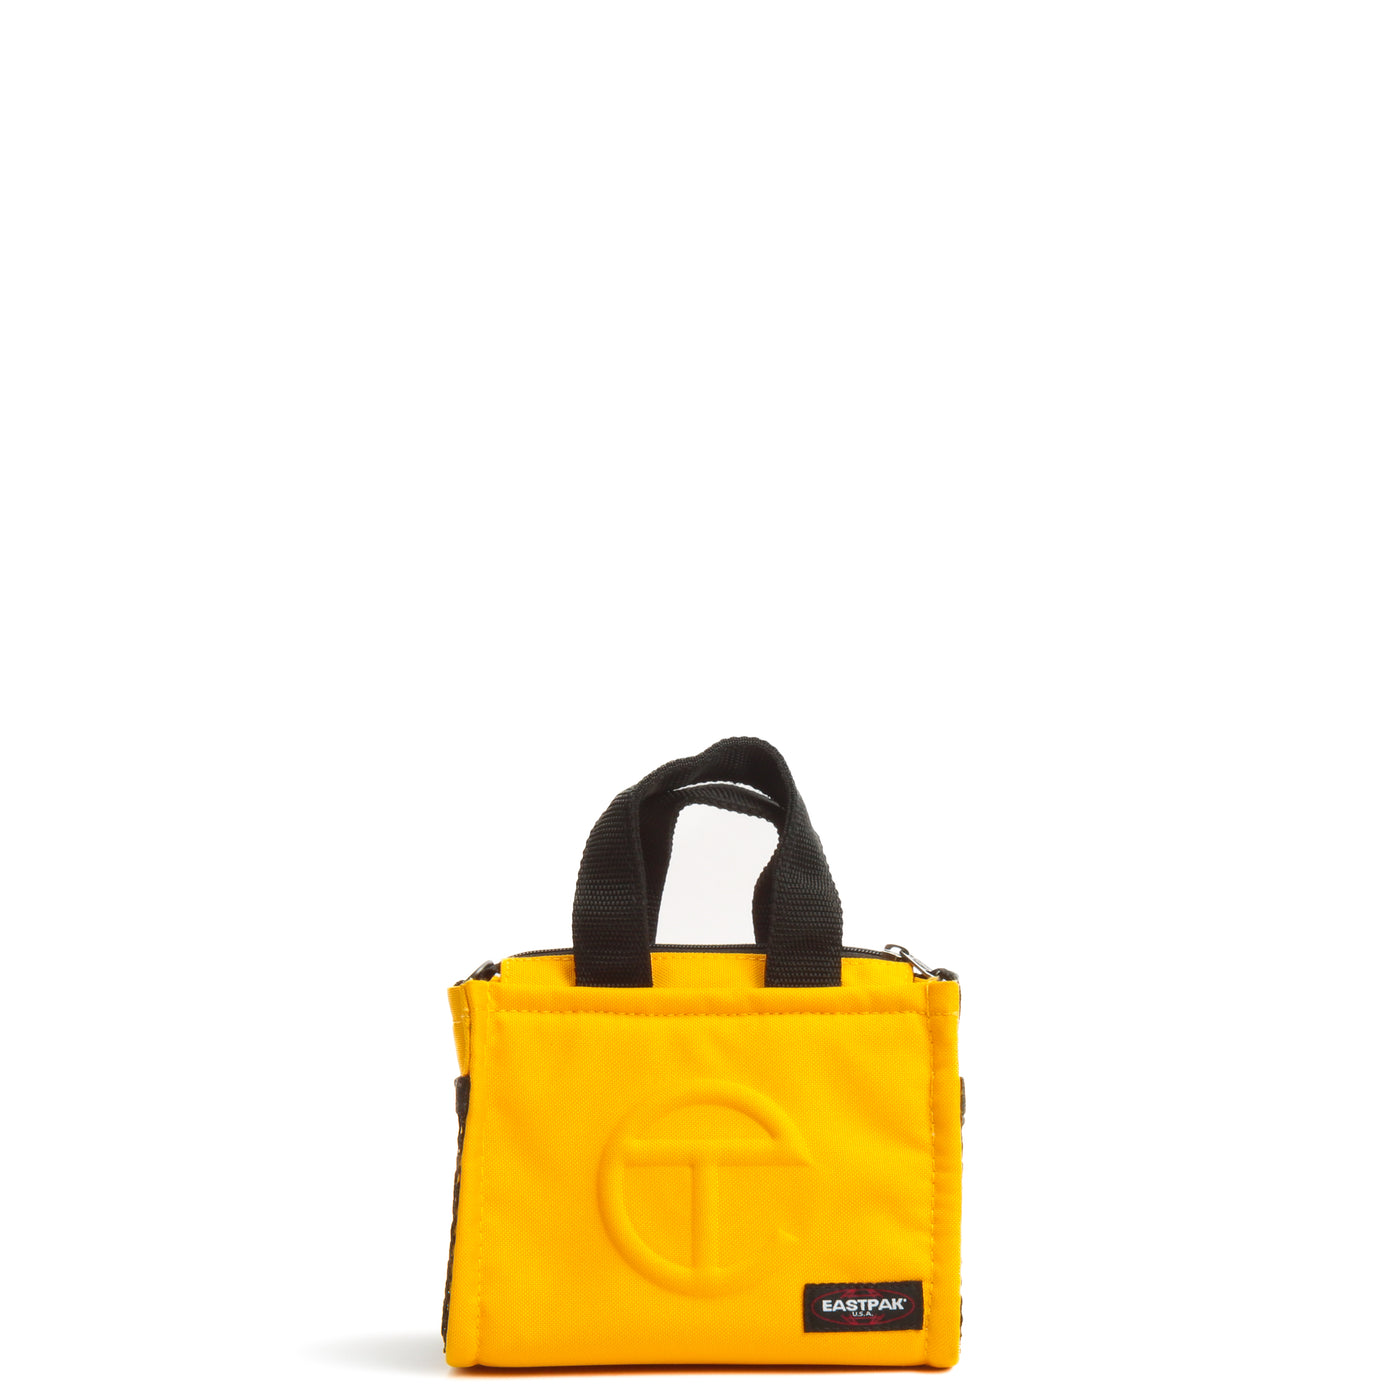 TELFAR Eastpak X Telfar Small Shopper Yellow/Black